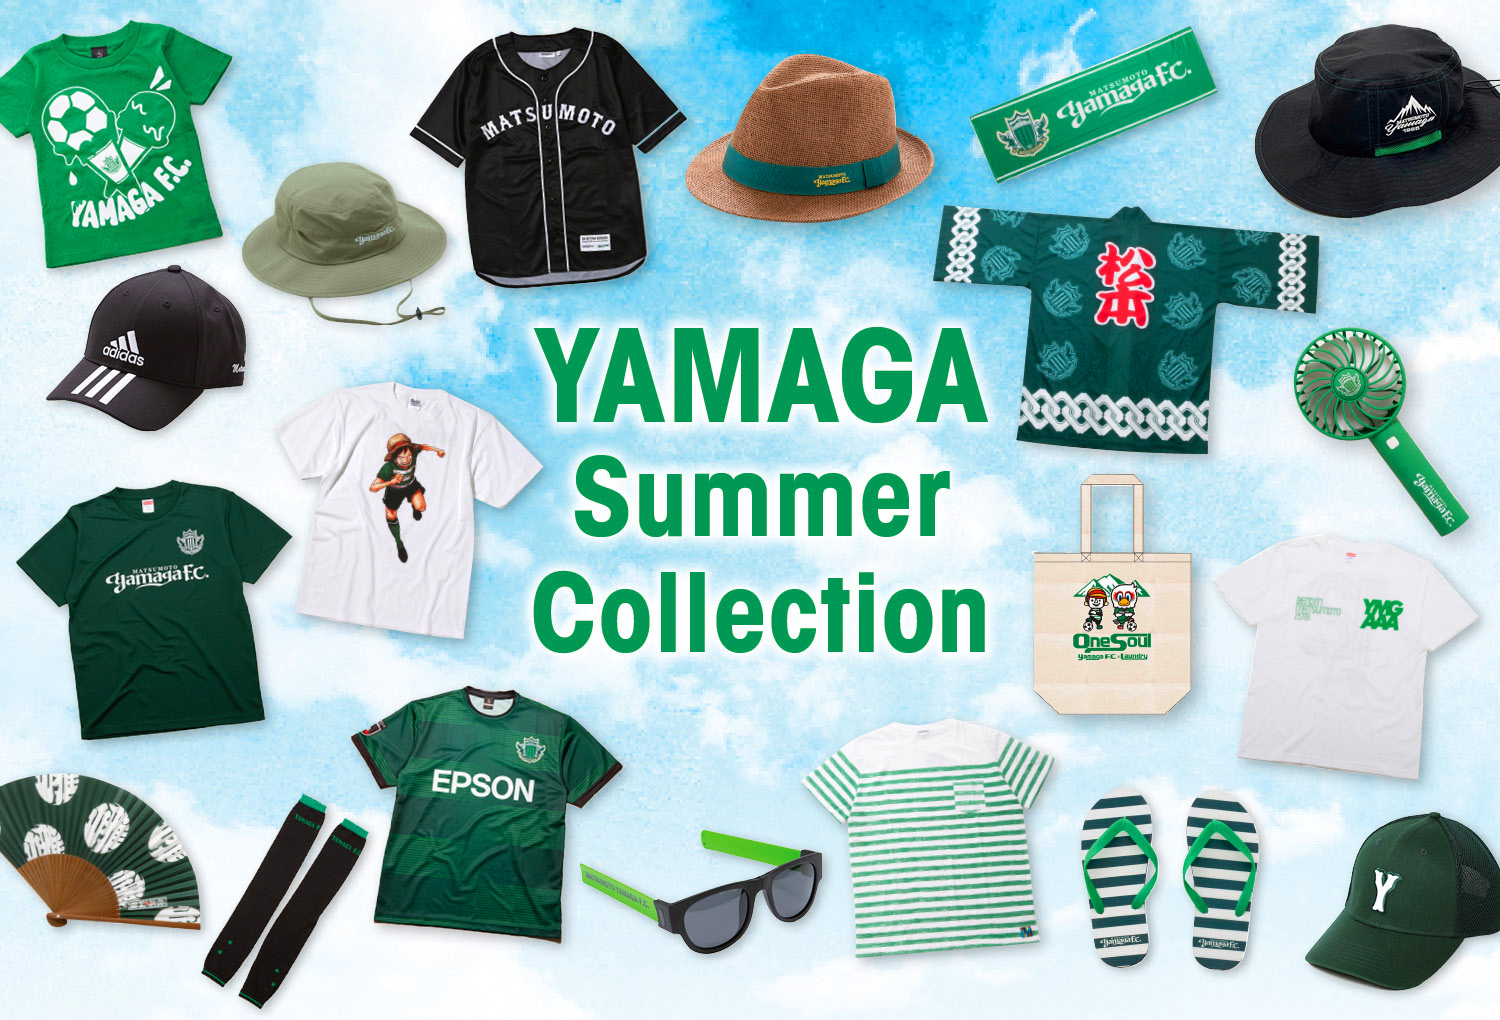 YAMAGA SUMMER COLLECTION | 松本山雅FCオンラインショップ